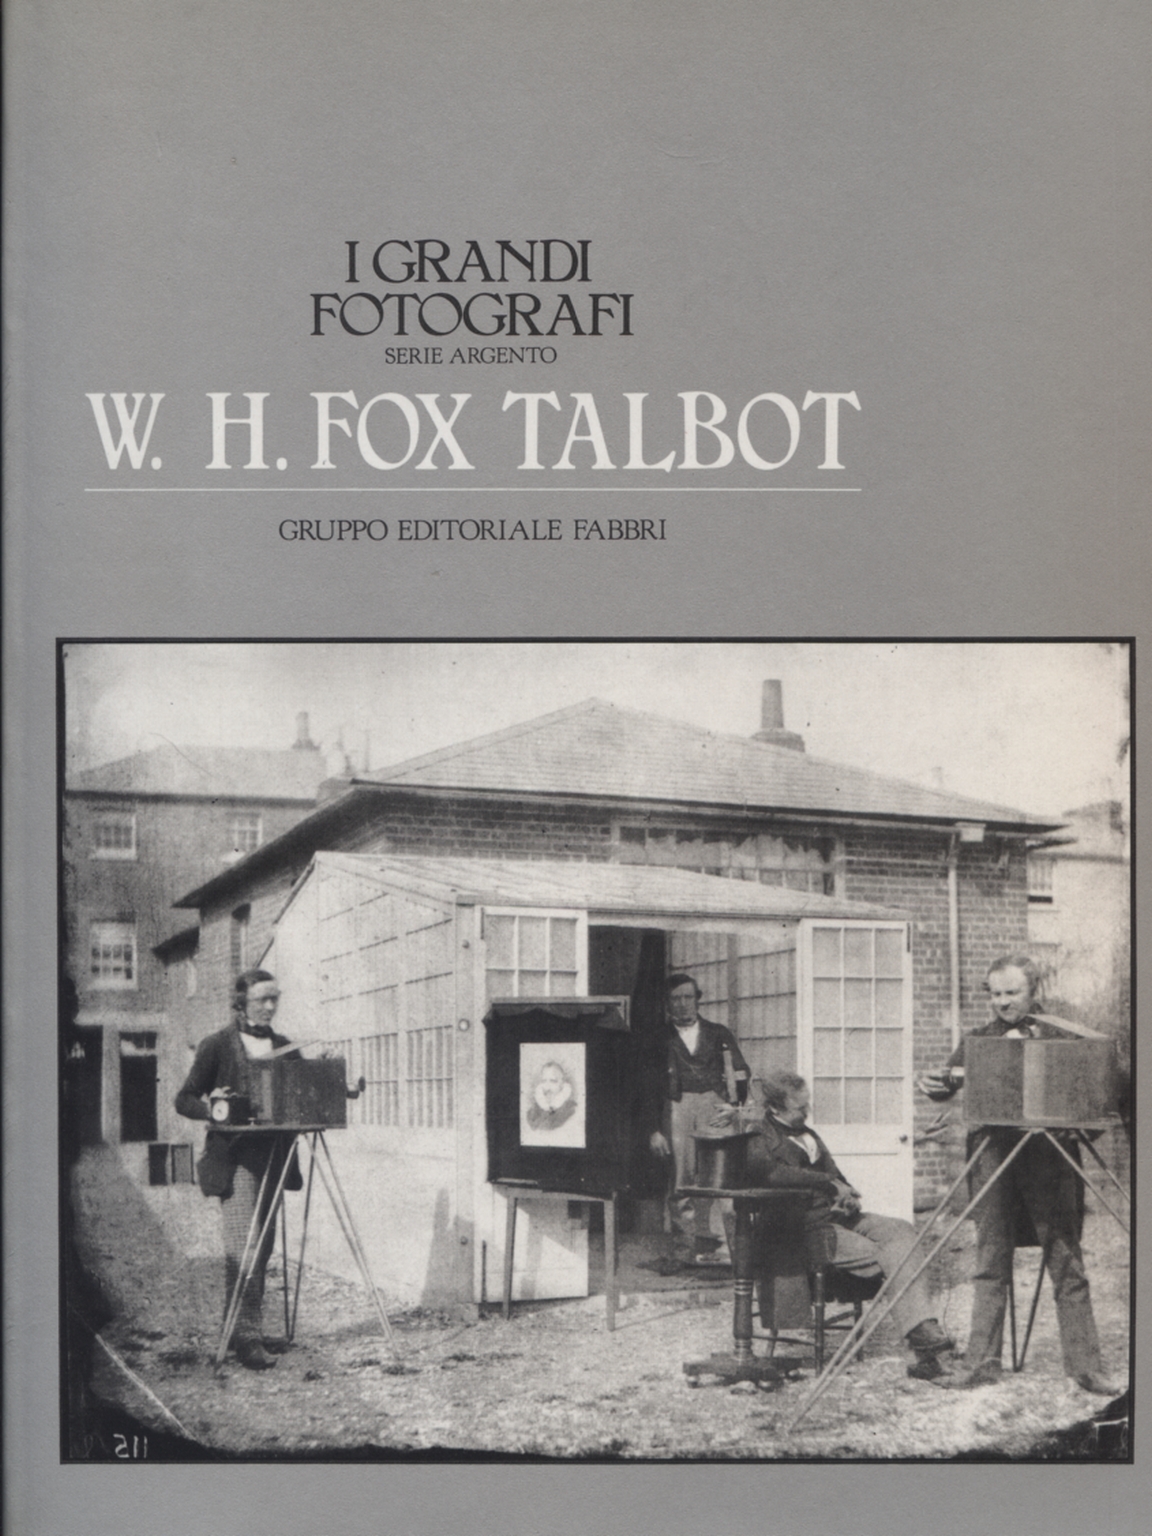 W. H. Fox Talbot, W. H. Fox Talbot